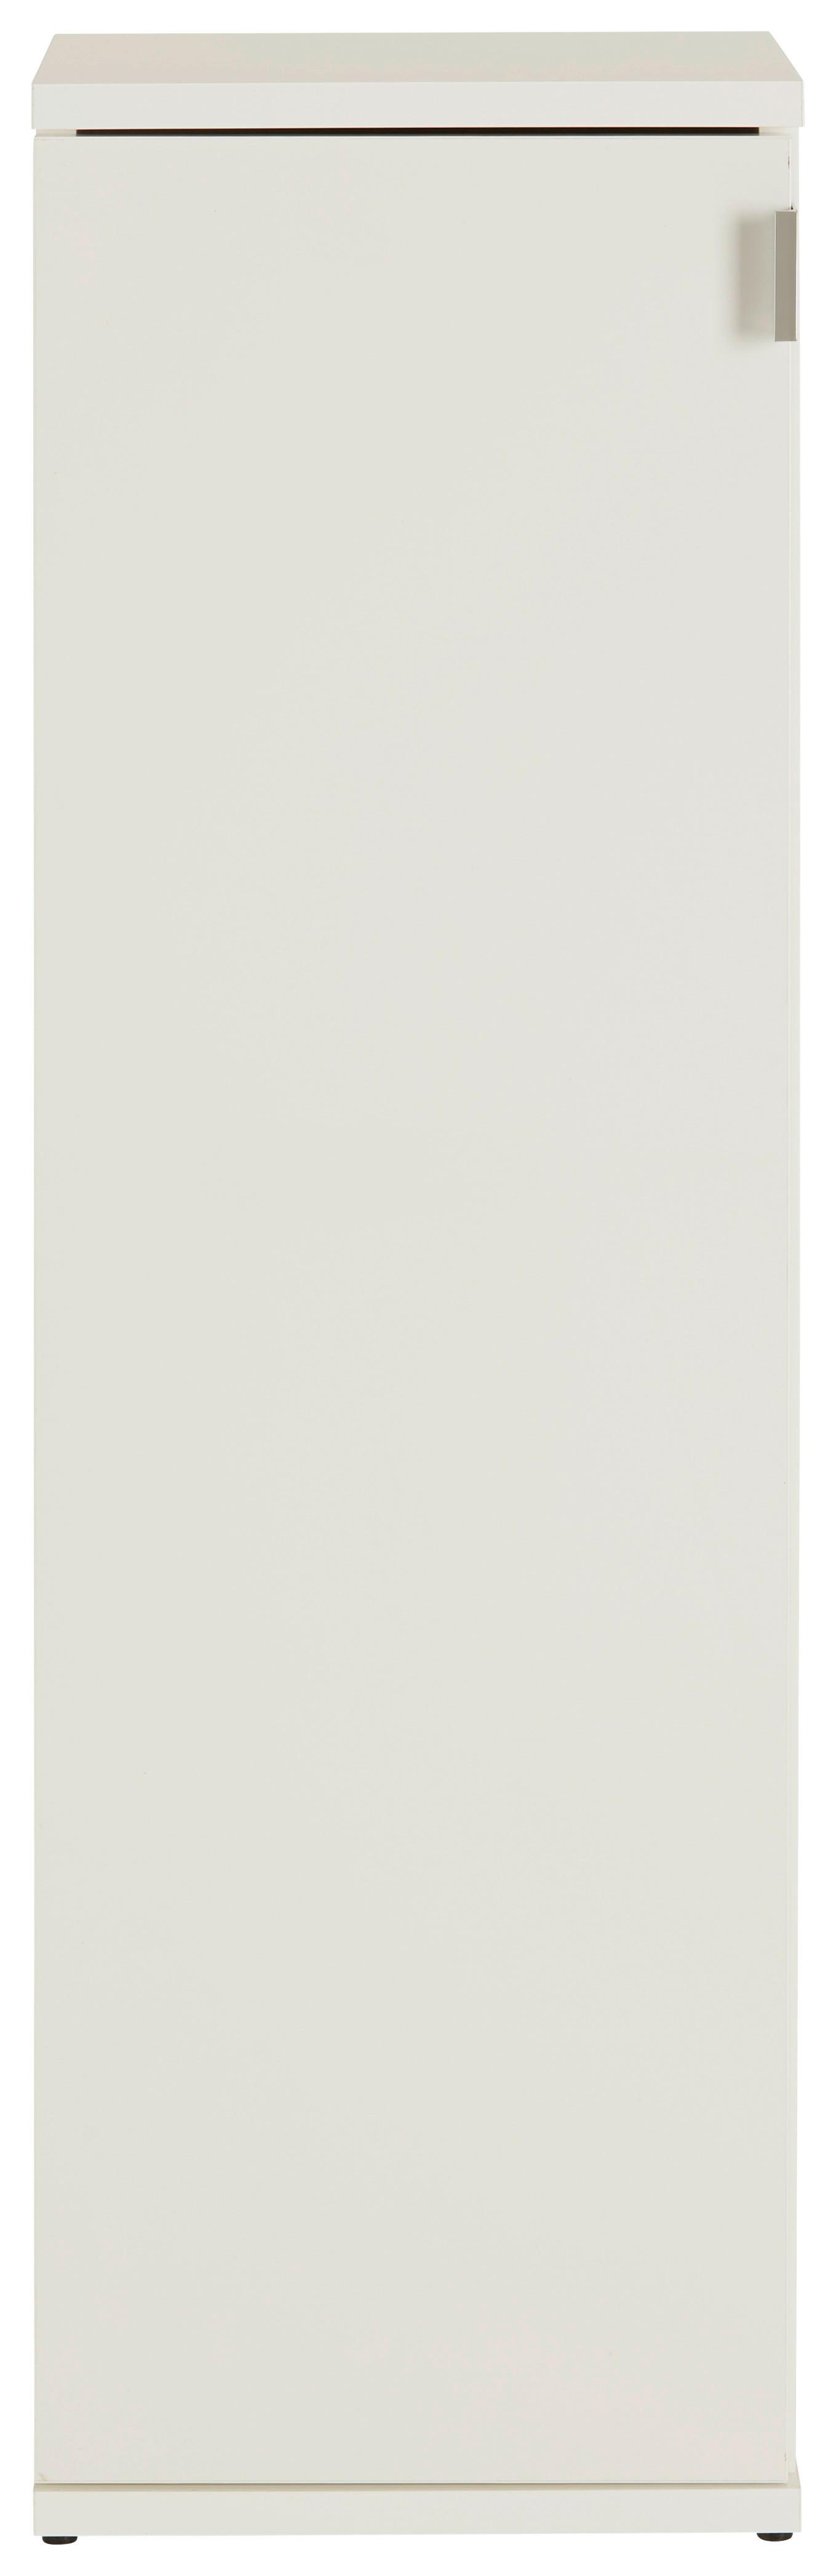 Omara Za Čevlje Projekt X - barve kroma/črna, Moderno, kovina/leseni material (30/99/34cm) - Modern Living